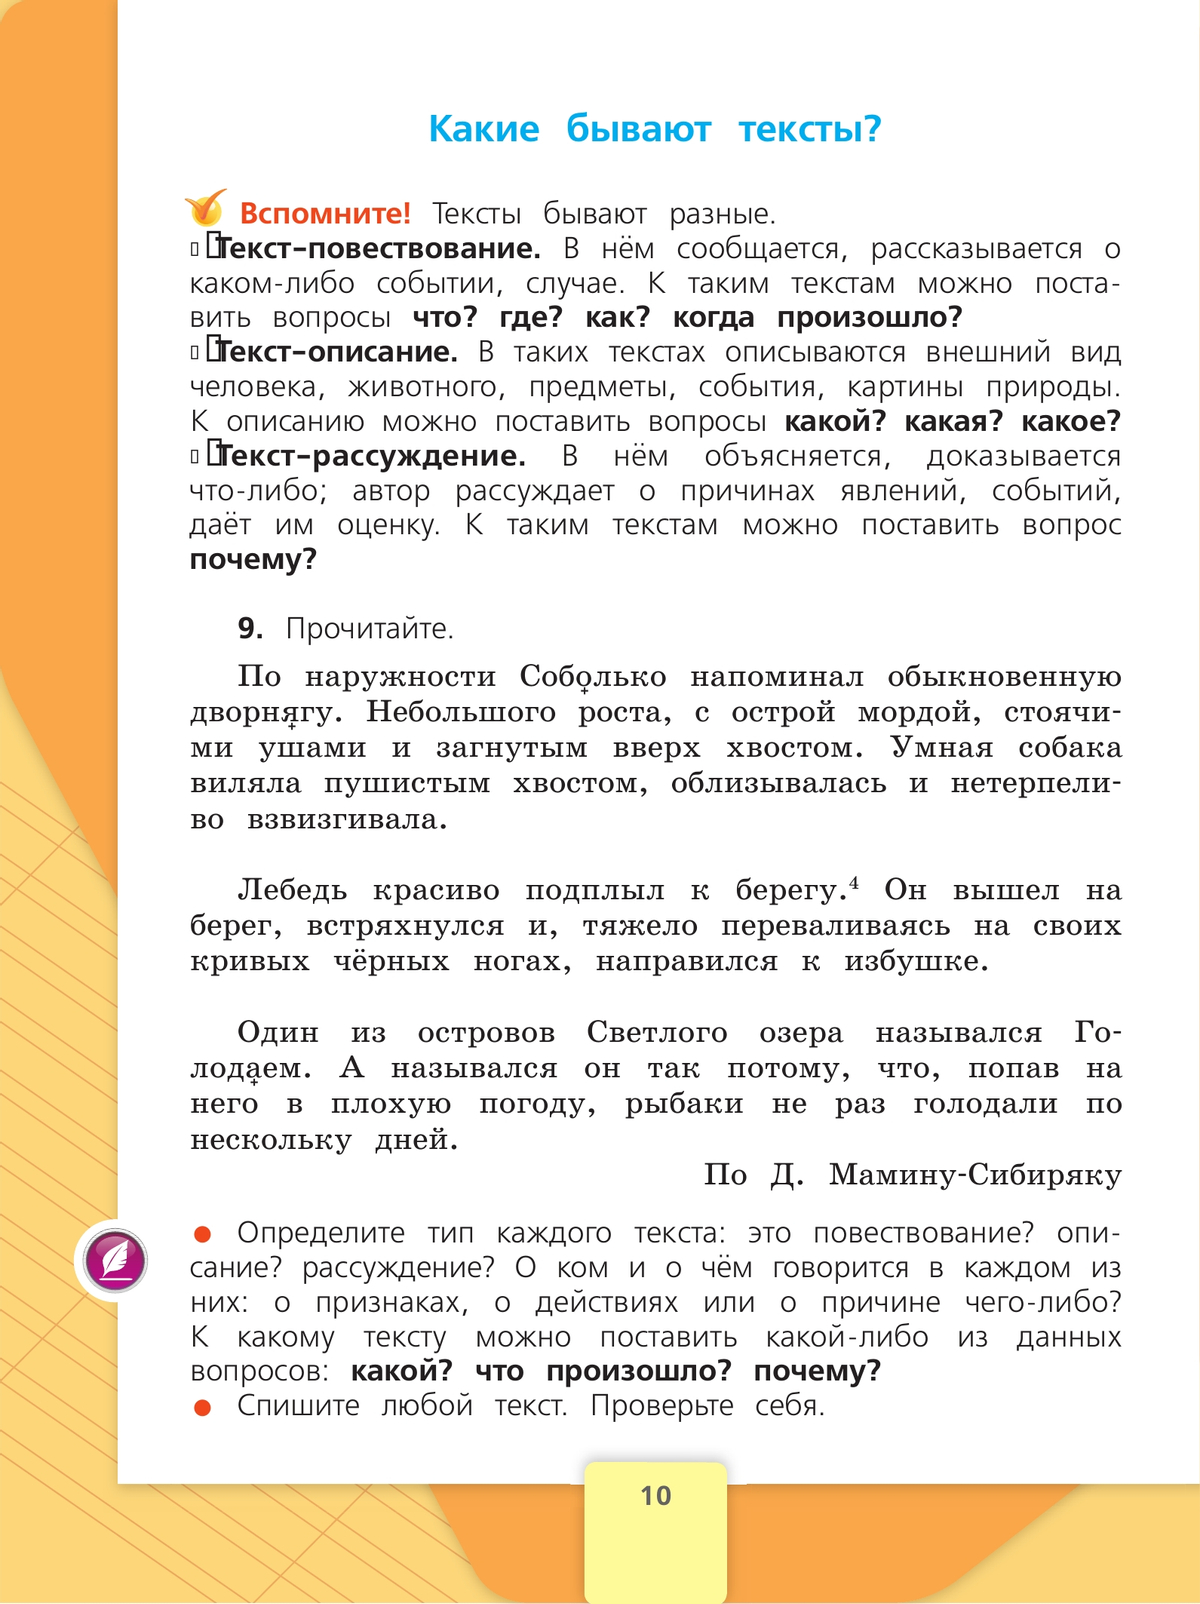 Русский язык. 4 класс. Учебник. В 2 ч. Часть 1 11